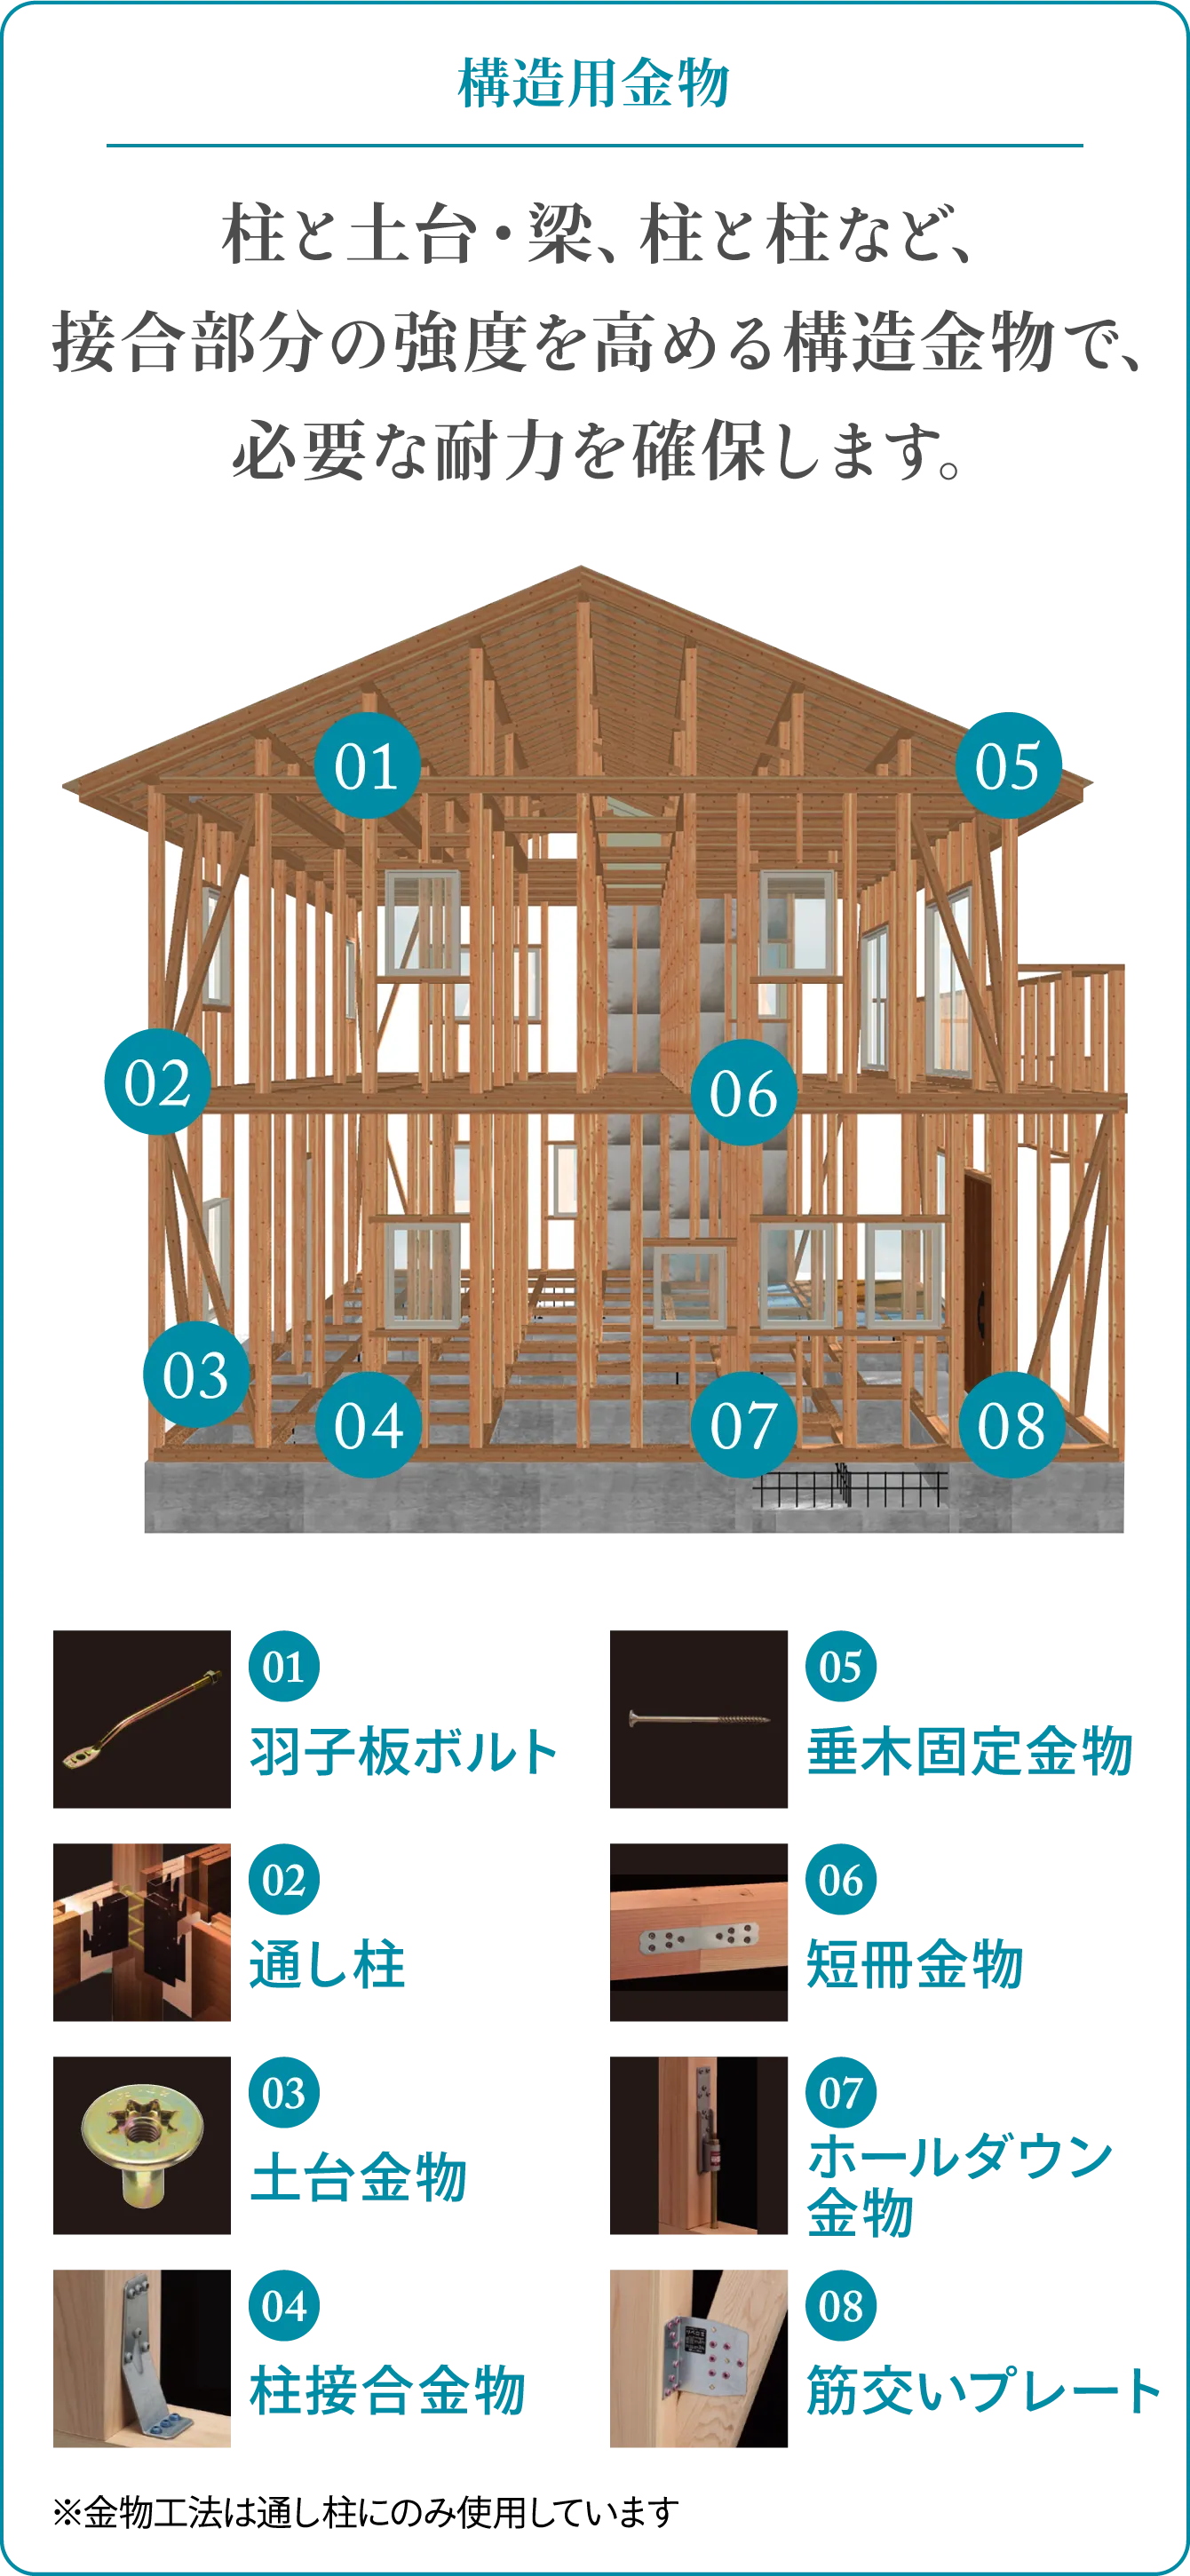 構造用金物 柱と土台・梁、柱と柱など、接合部分の強度を高める構造金物で、必要な耐力を確保します。